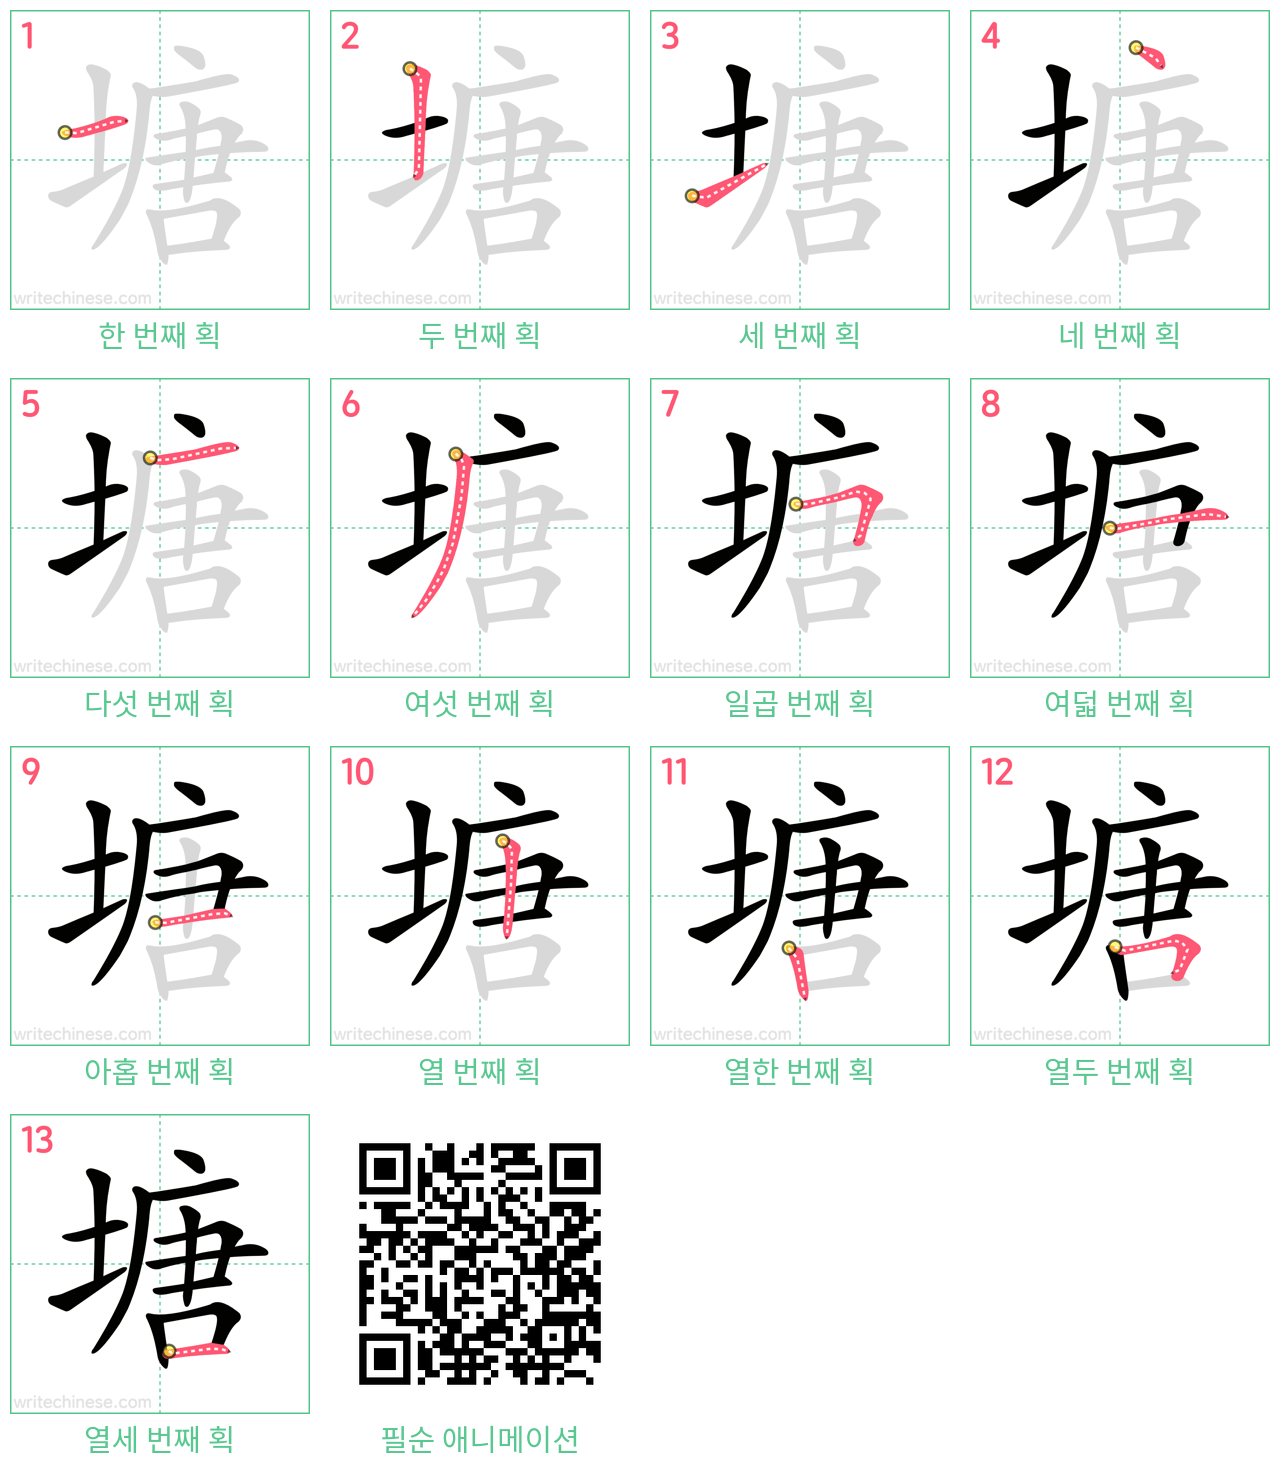 塘 step-by-step stroke order diagrams